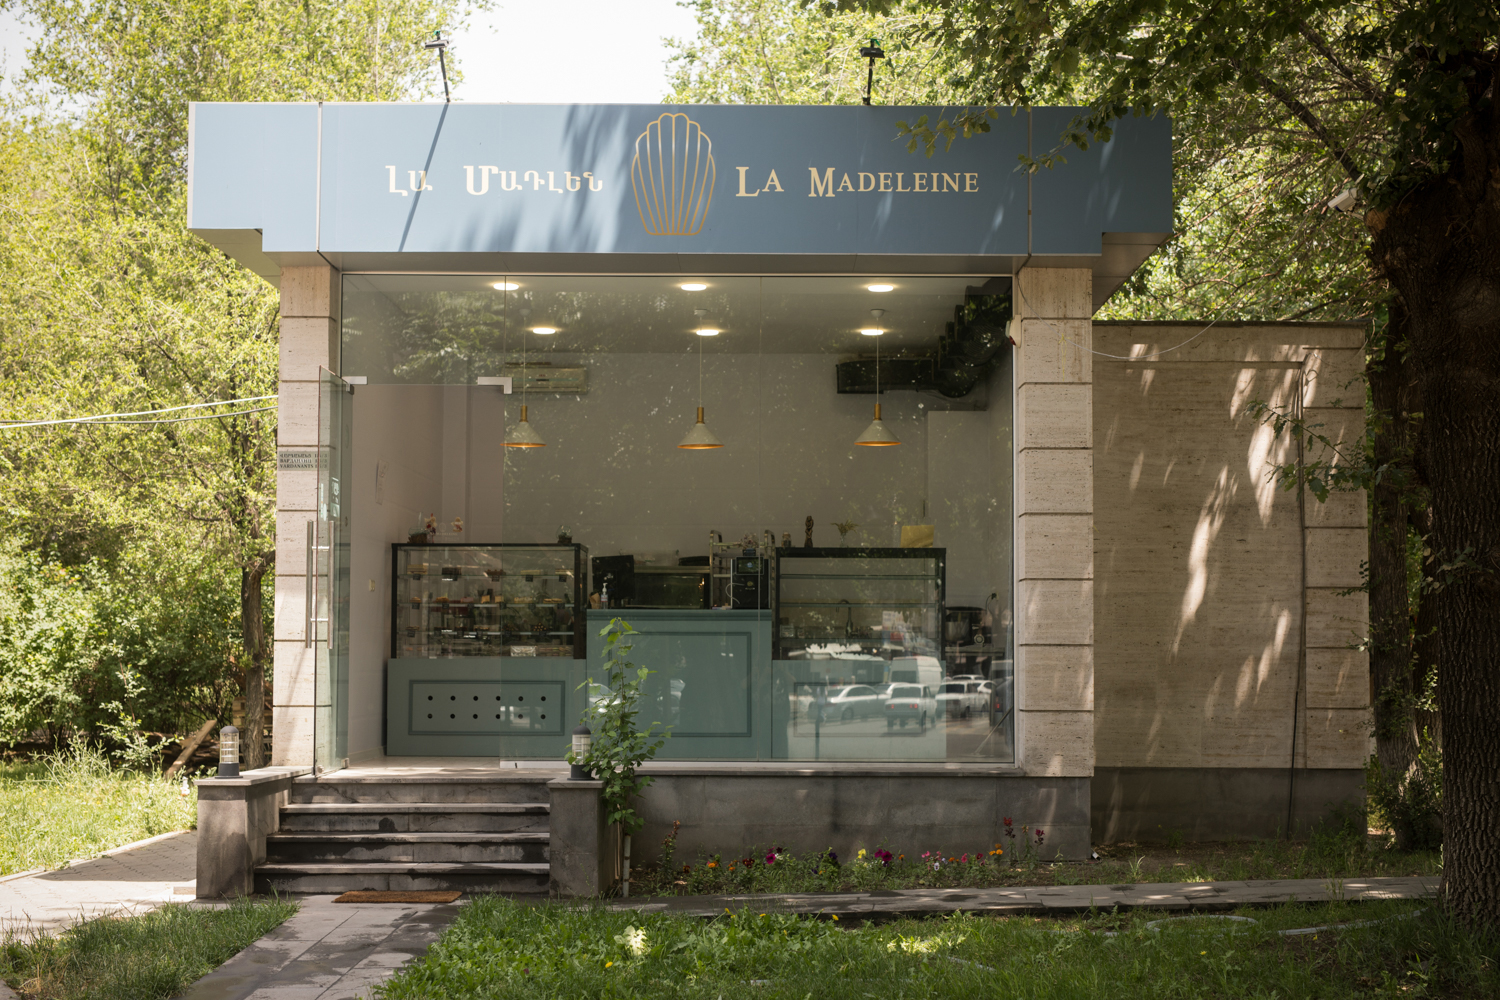 La madeleine patiserie. Հրուշակագործ ընկերուհիներն ու գունեղ «Մադլենները»